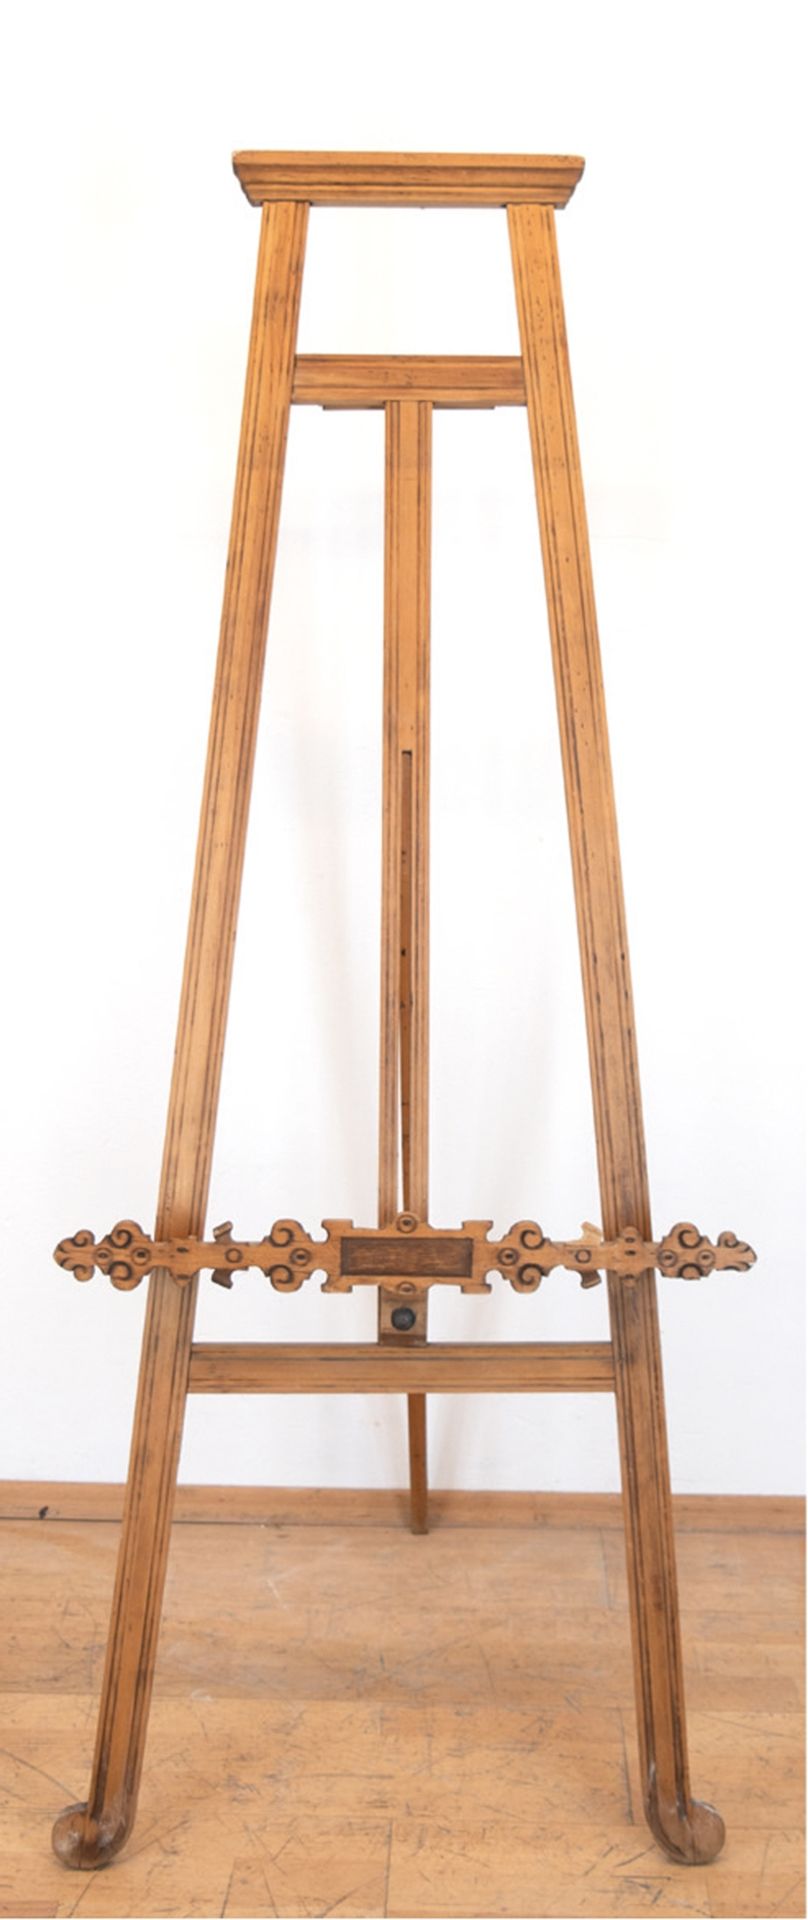 Staffelei, Holz, höhenverstellbare Ablage beschnitzt und mit Brandmalerei, 158x54 cm